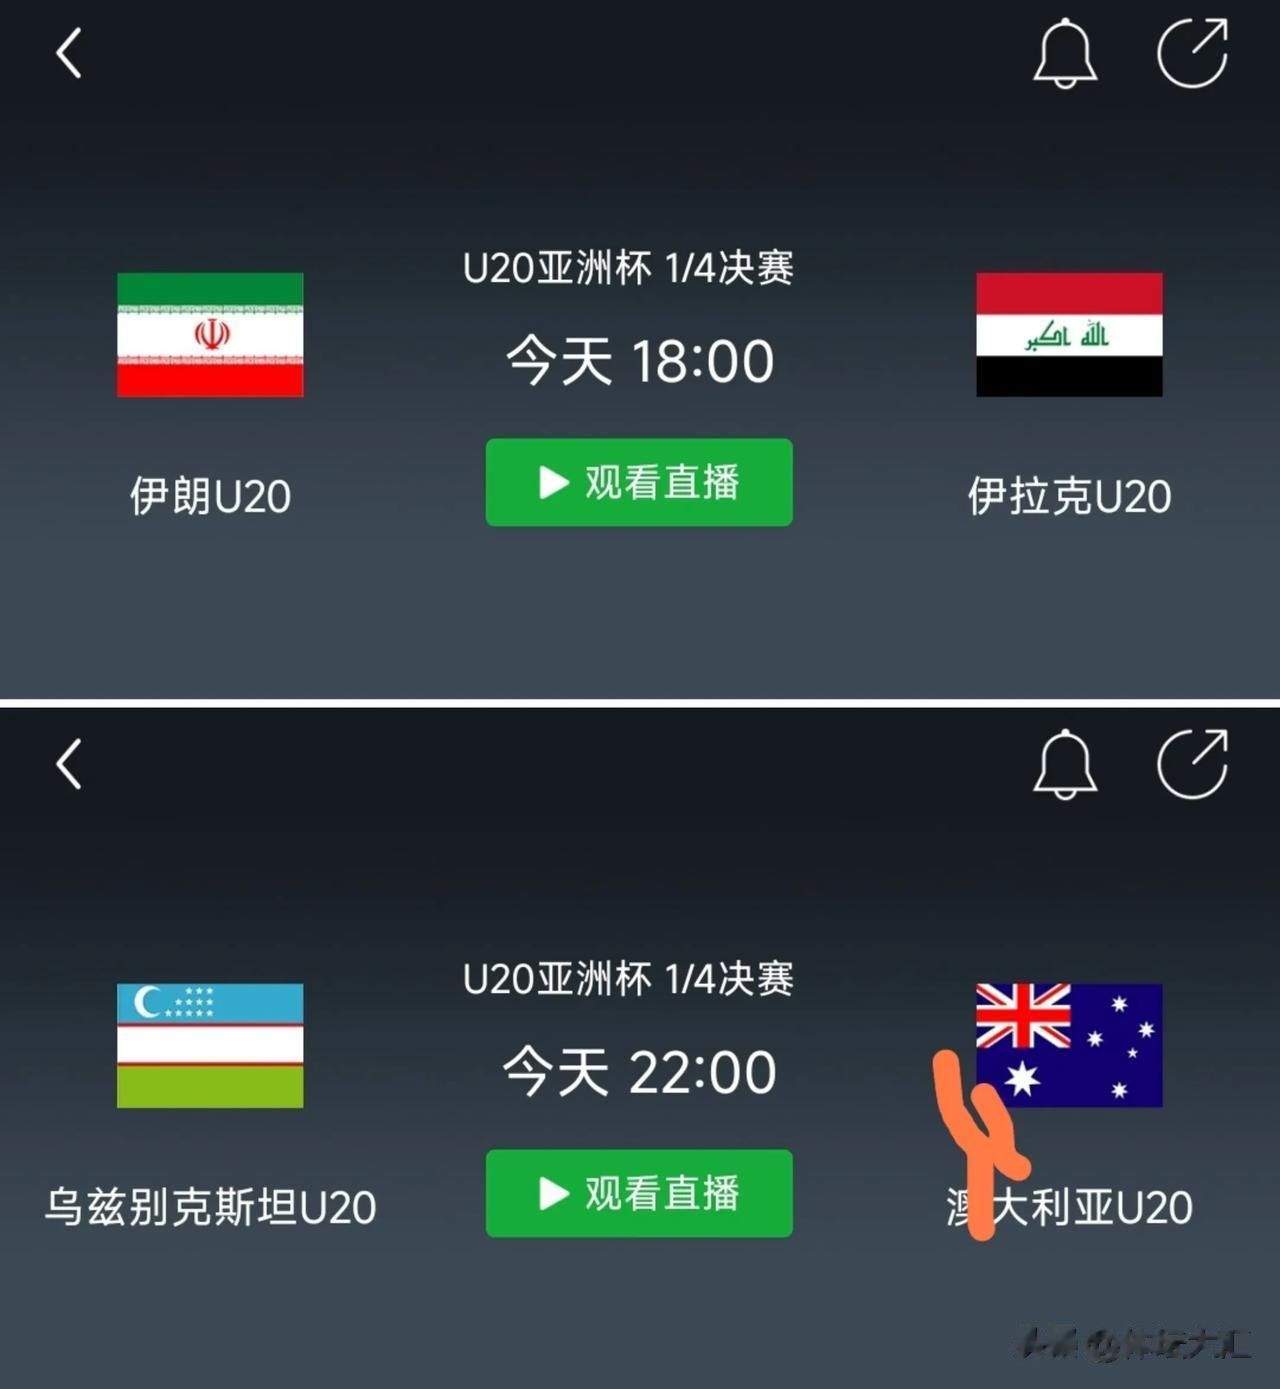 【U20亚洲杯1/4决赛今晚正式打响】

⏰3月11日 18:00
⚔伊朗U20(1)